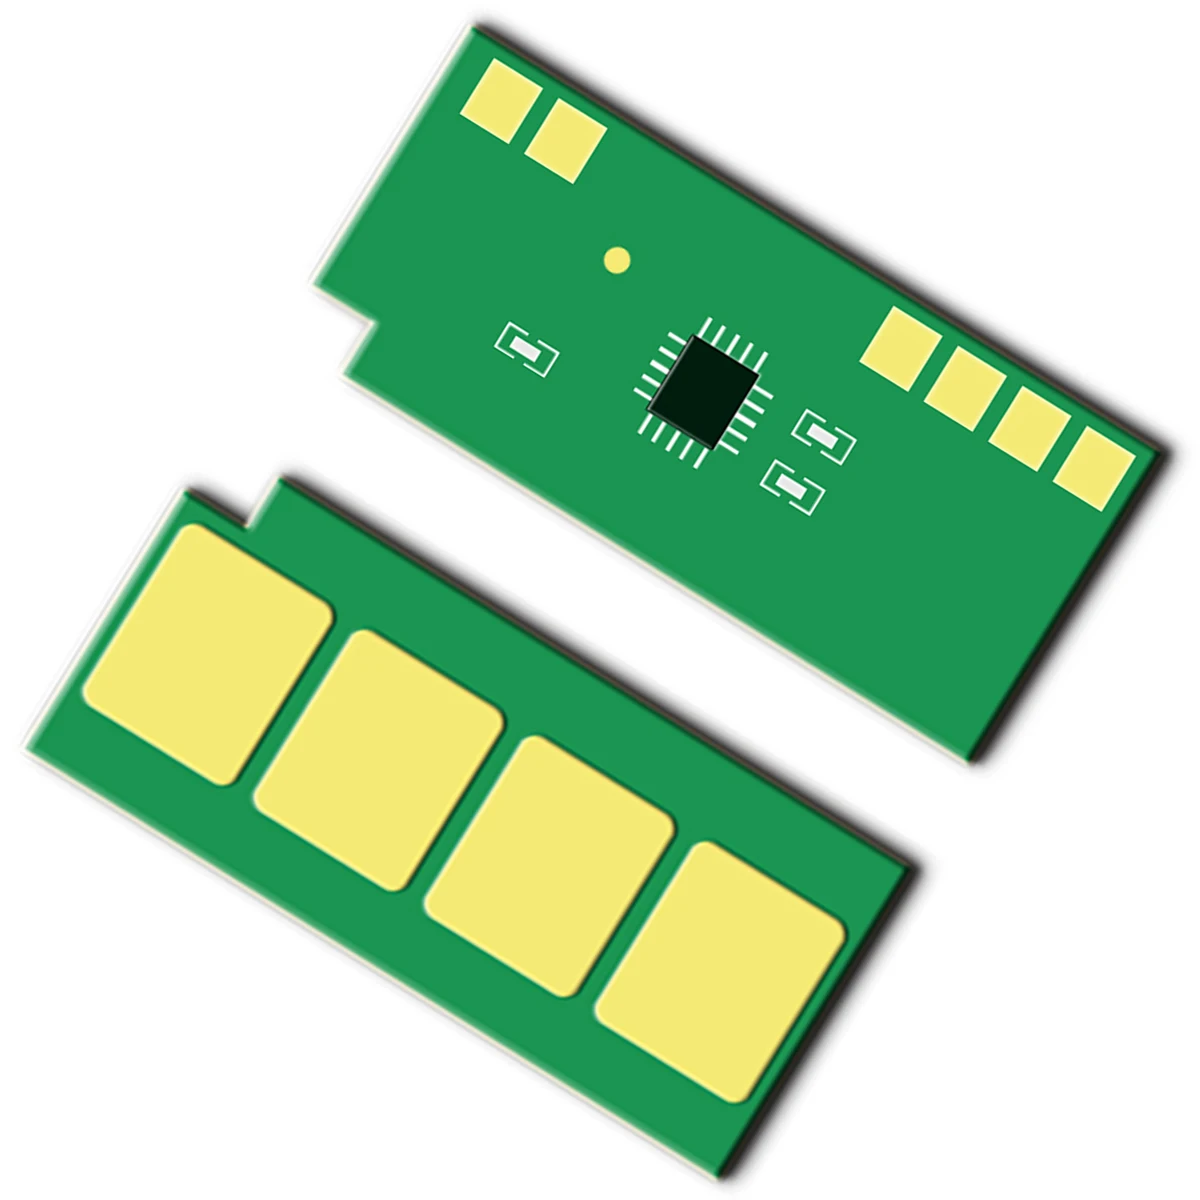 

1PCS PE-216 PC-216 unlimited Permanent Toner Chip For Pantum P2506 M2506 P2506W PC216 PE216 PE-216 PC-216 unlimited Toner Chip